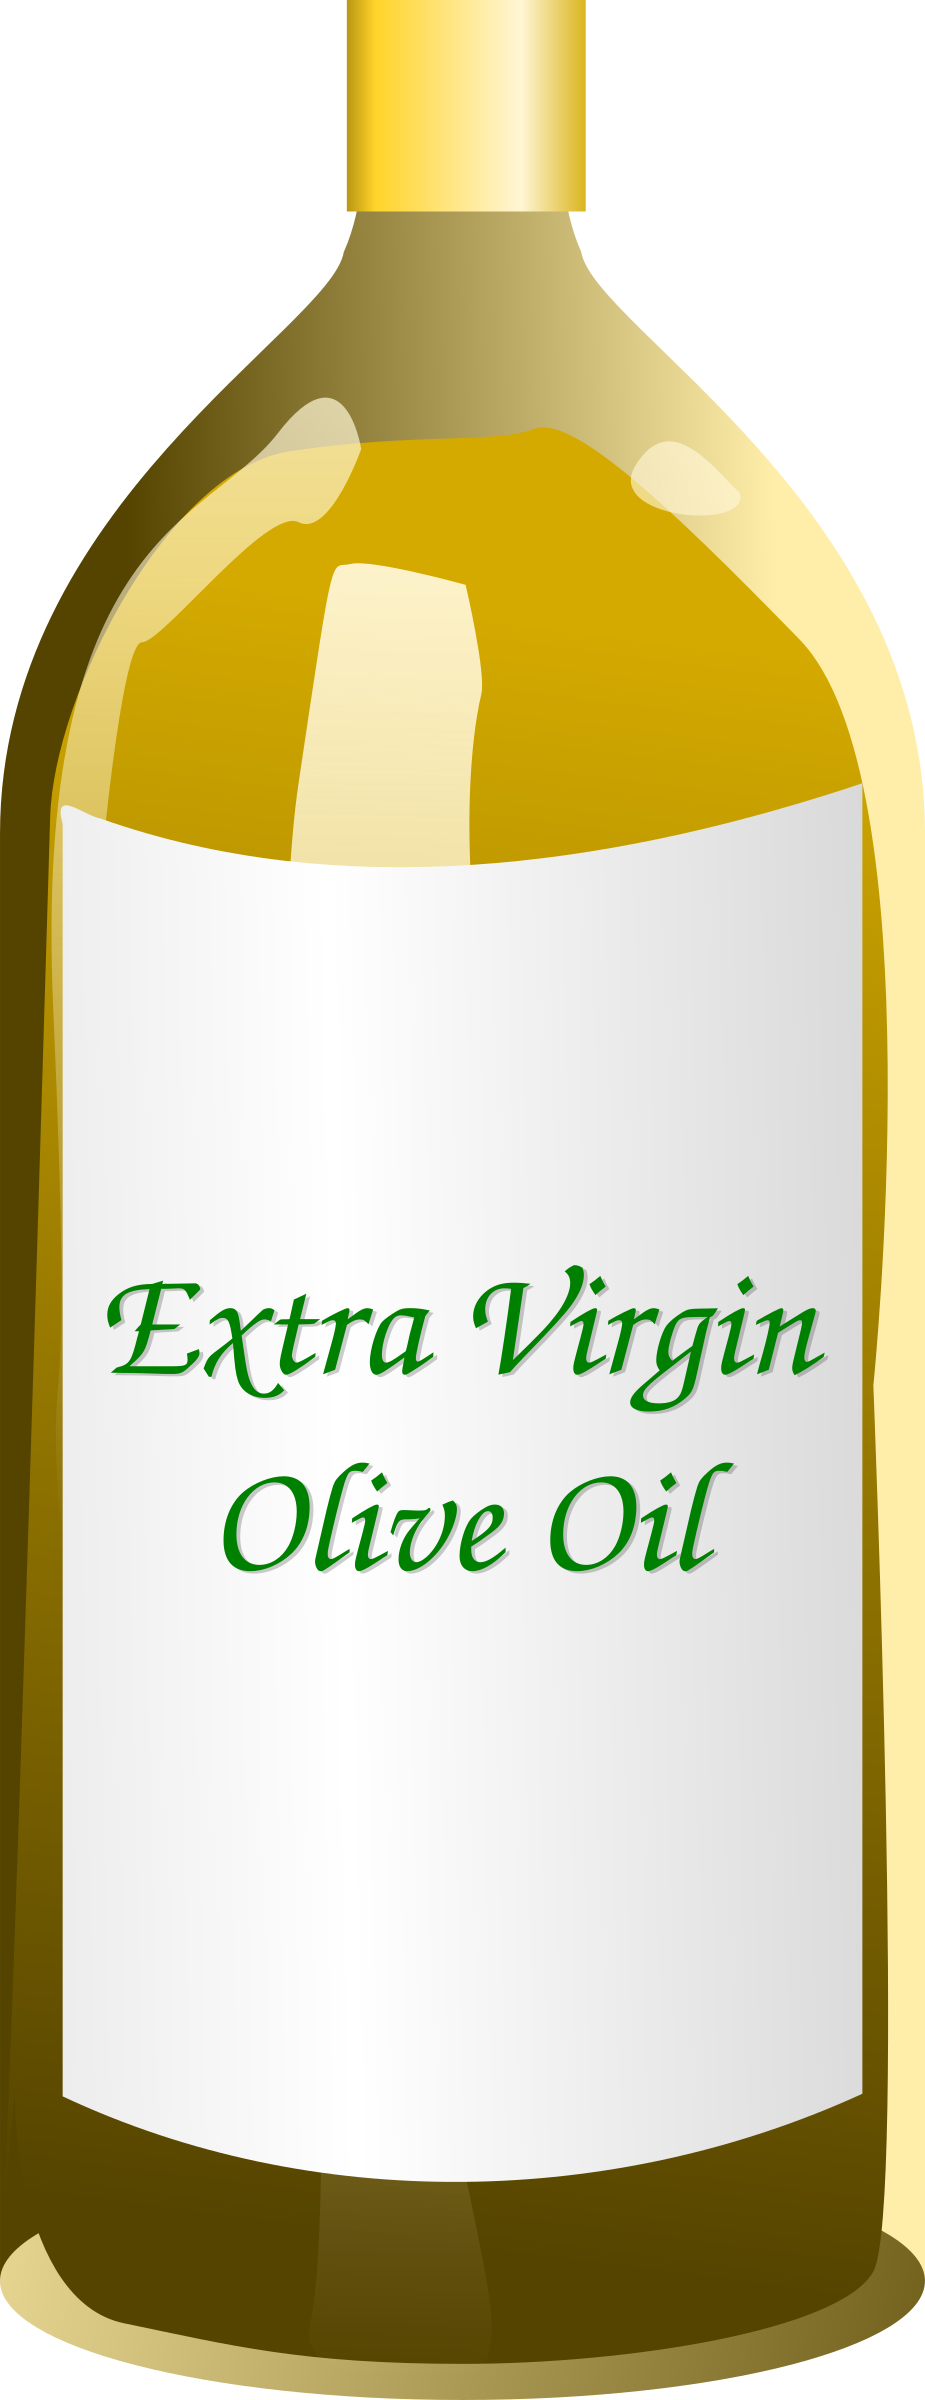 Extra Virgin Olive Oil bottle SVG Clip arts